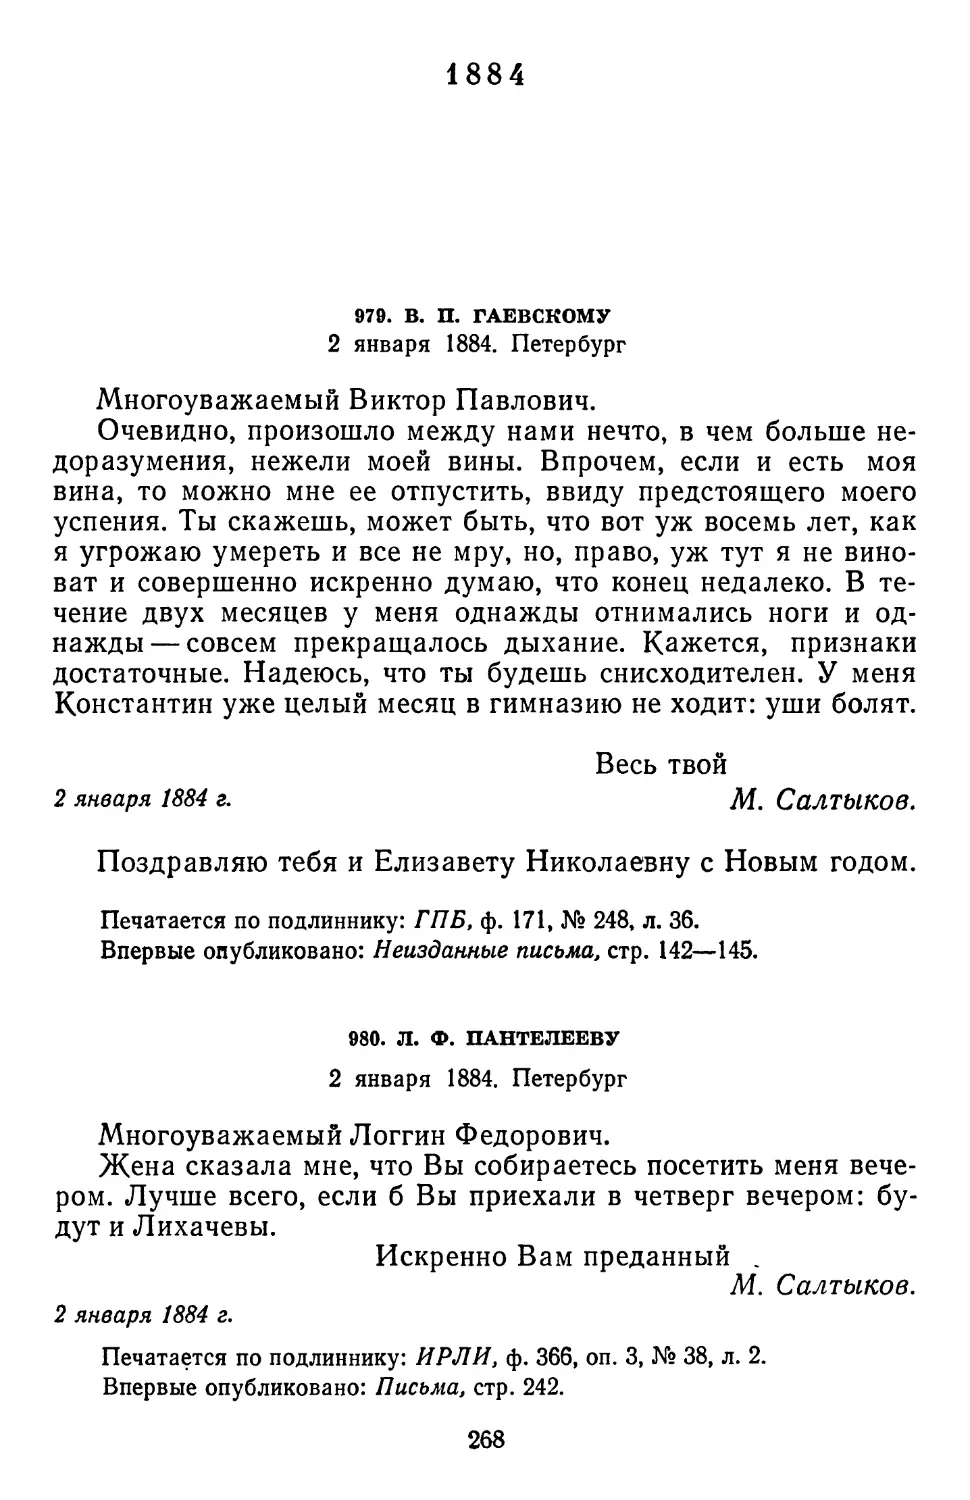 1884
980.Л. Ф. Пантелееву. 2 января 1884. Петербург